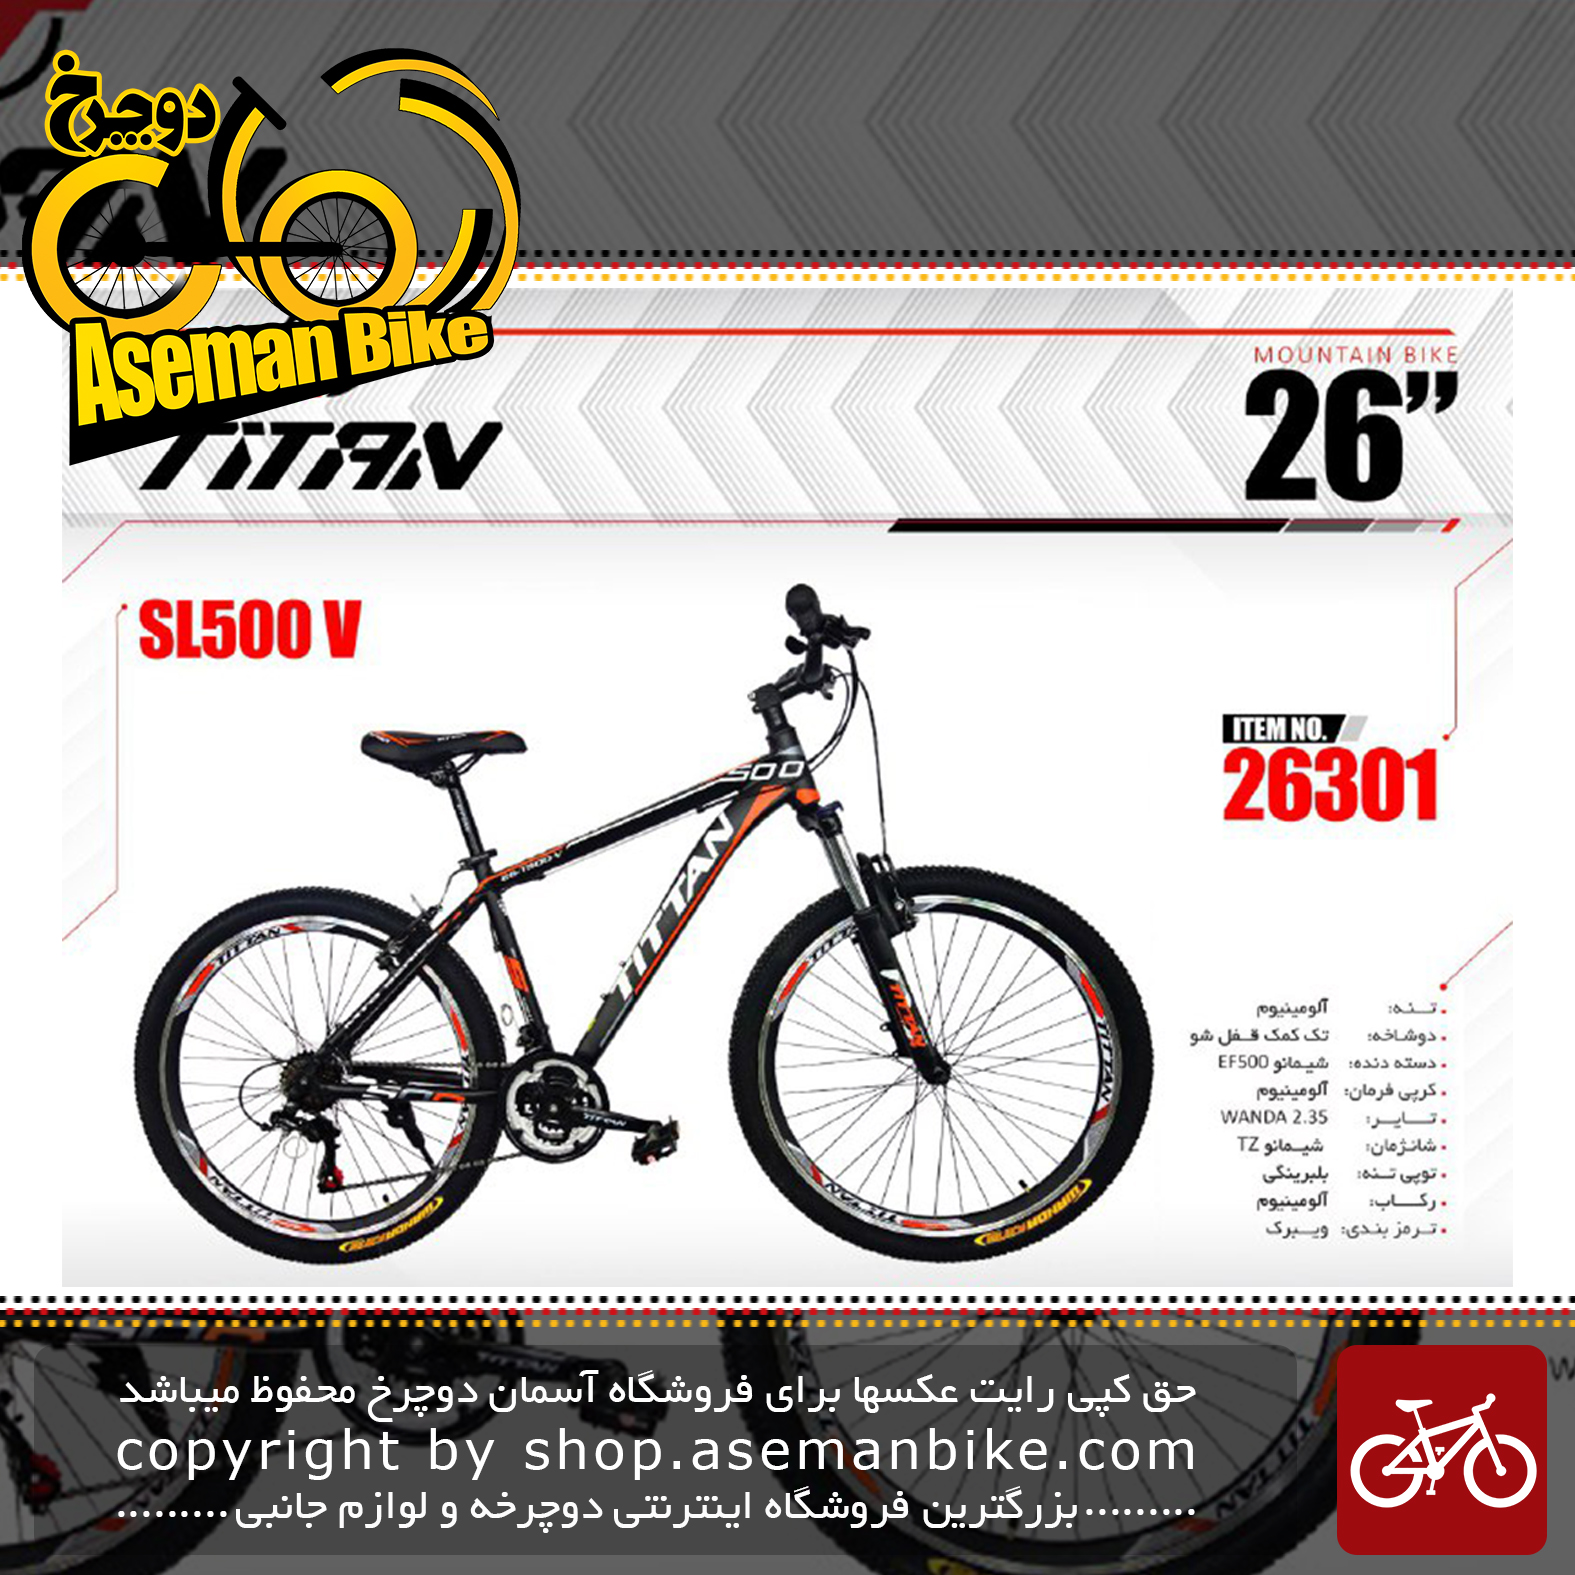 دوچرخه کوهستان تایتان سایز 26 مدل اس ال 500 وی TITAN Bicycle Size 26 SL500 V